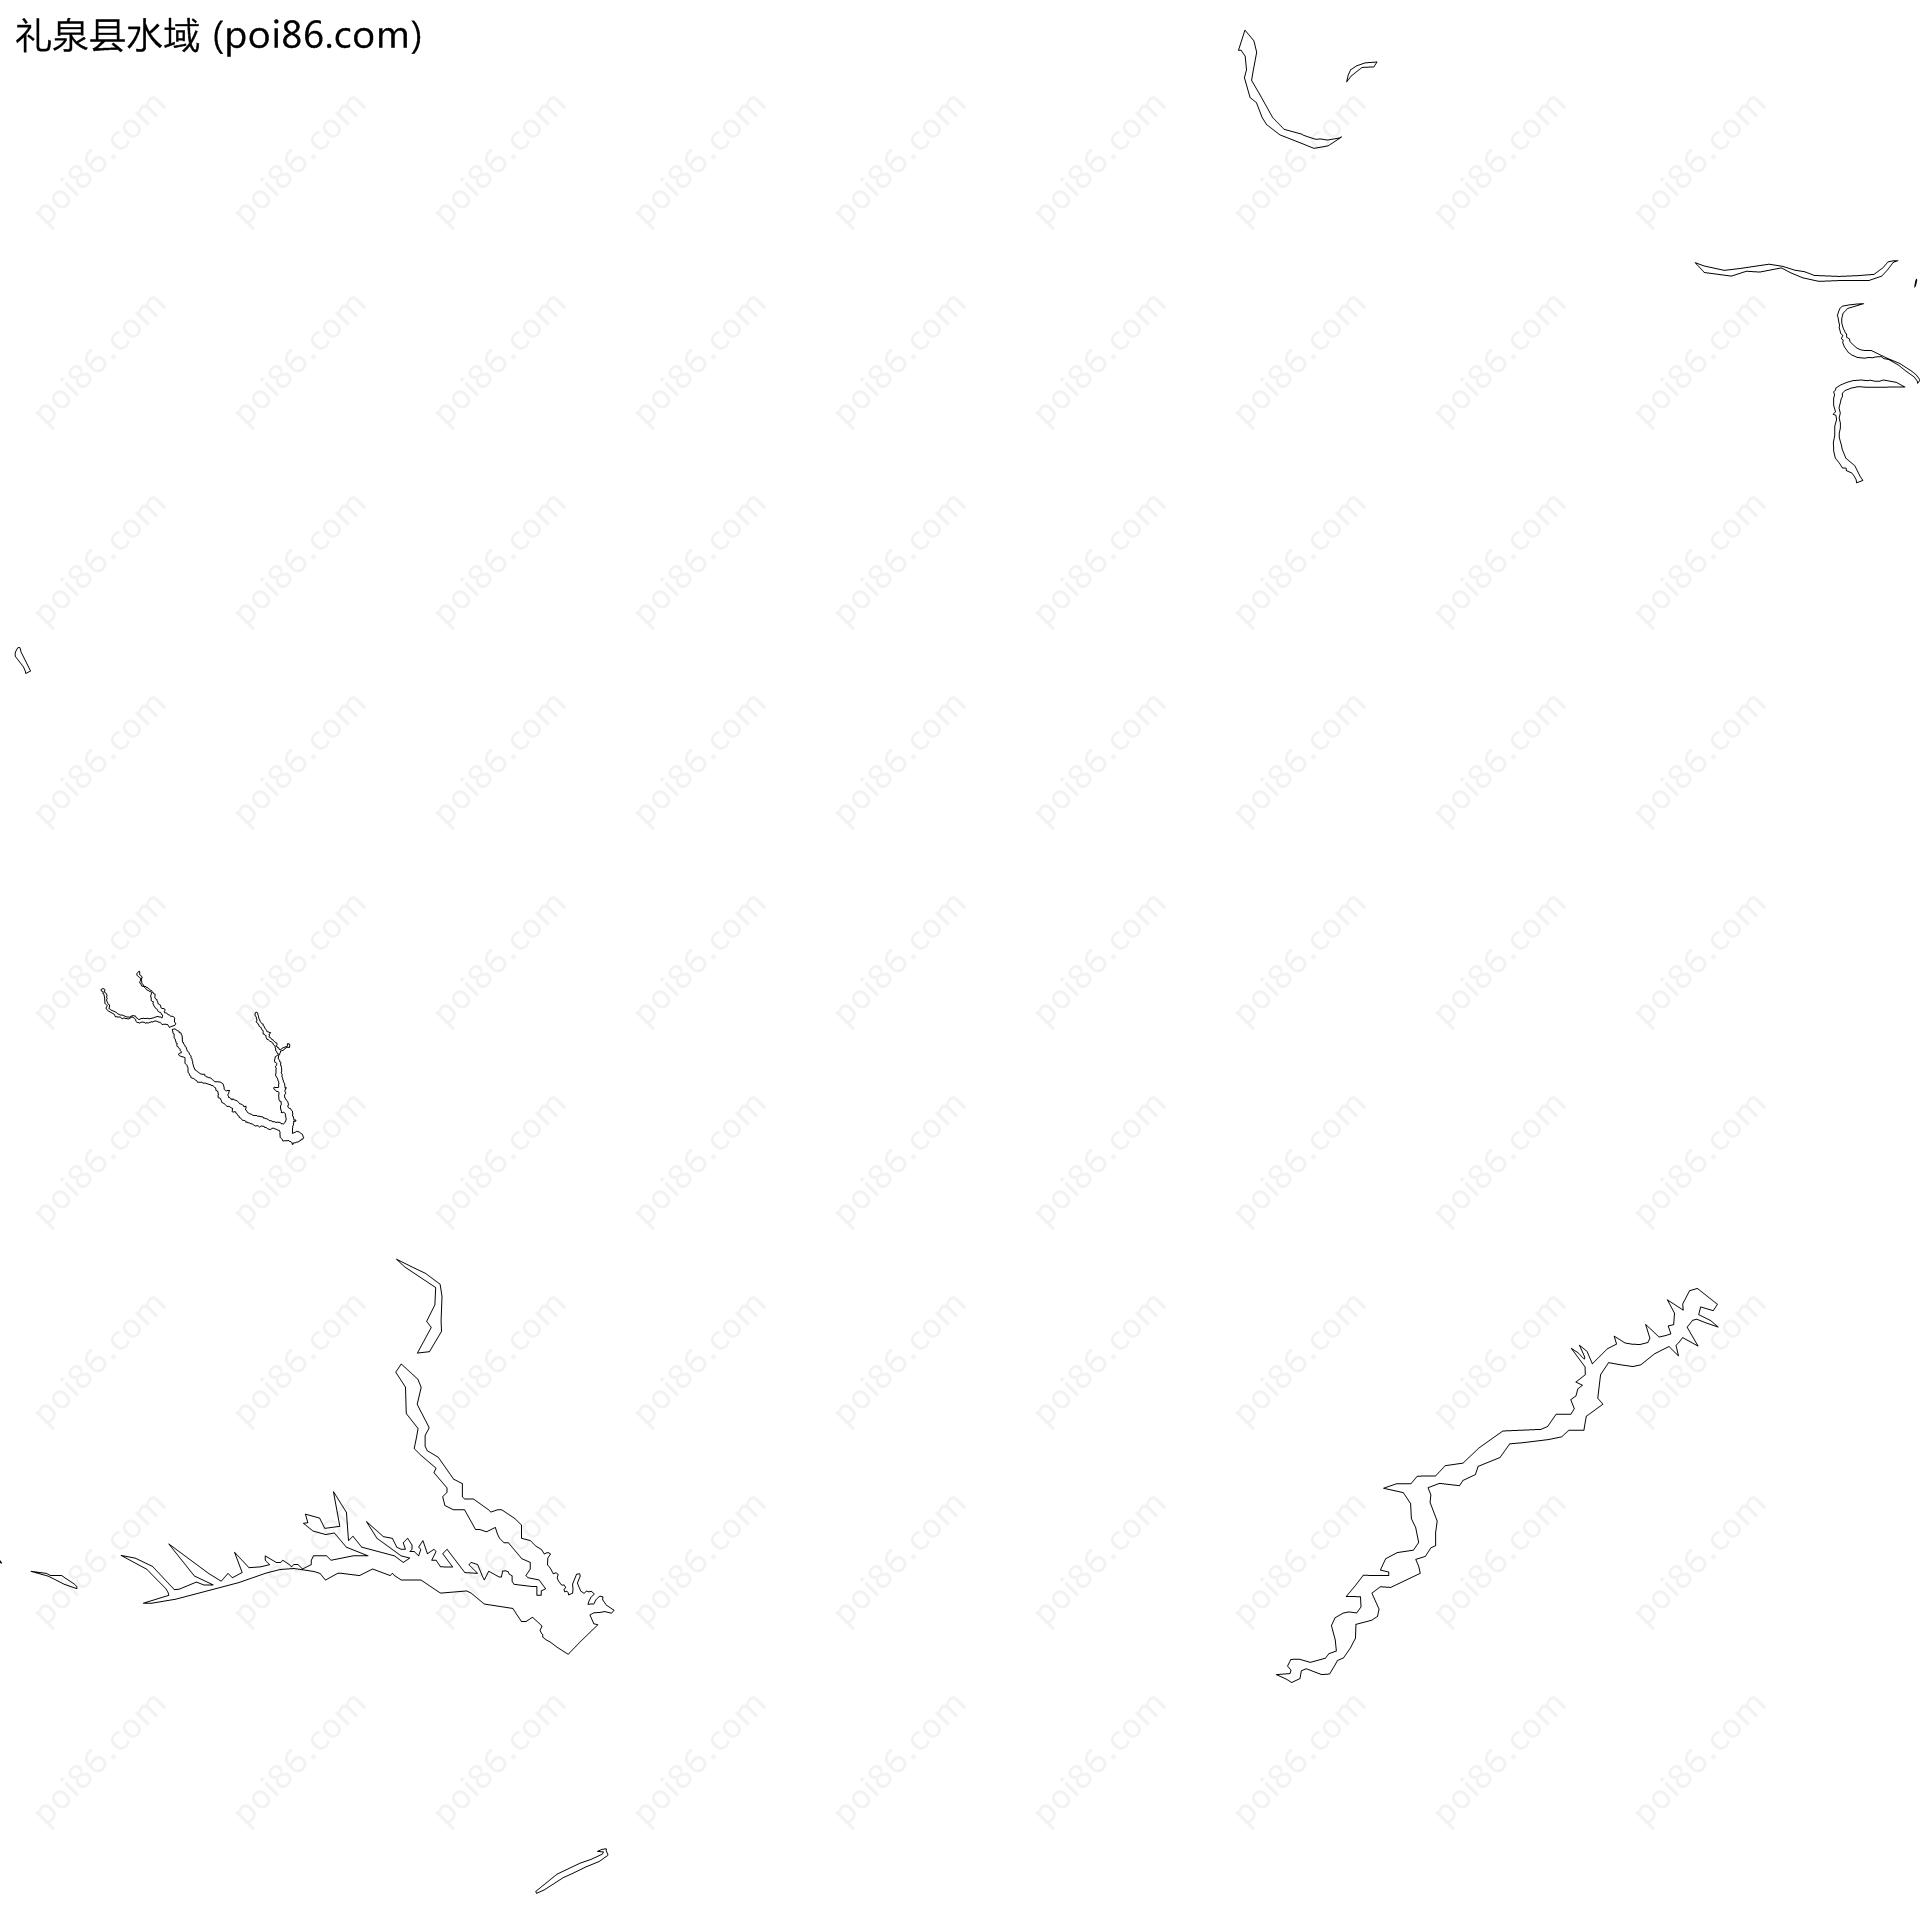 礼泉县水域地图